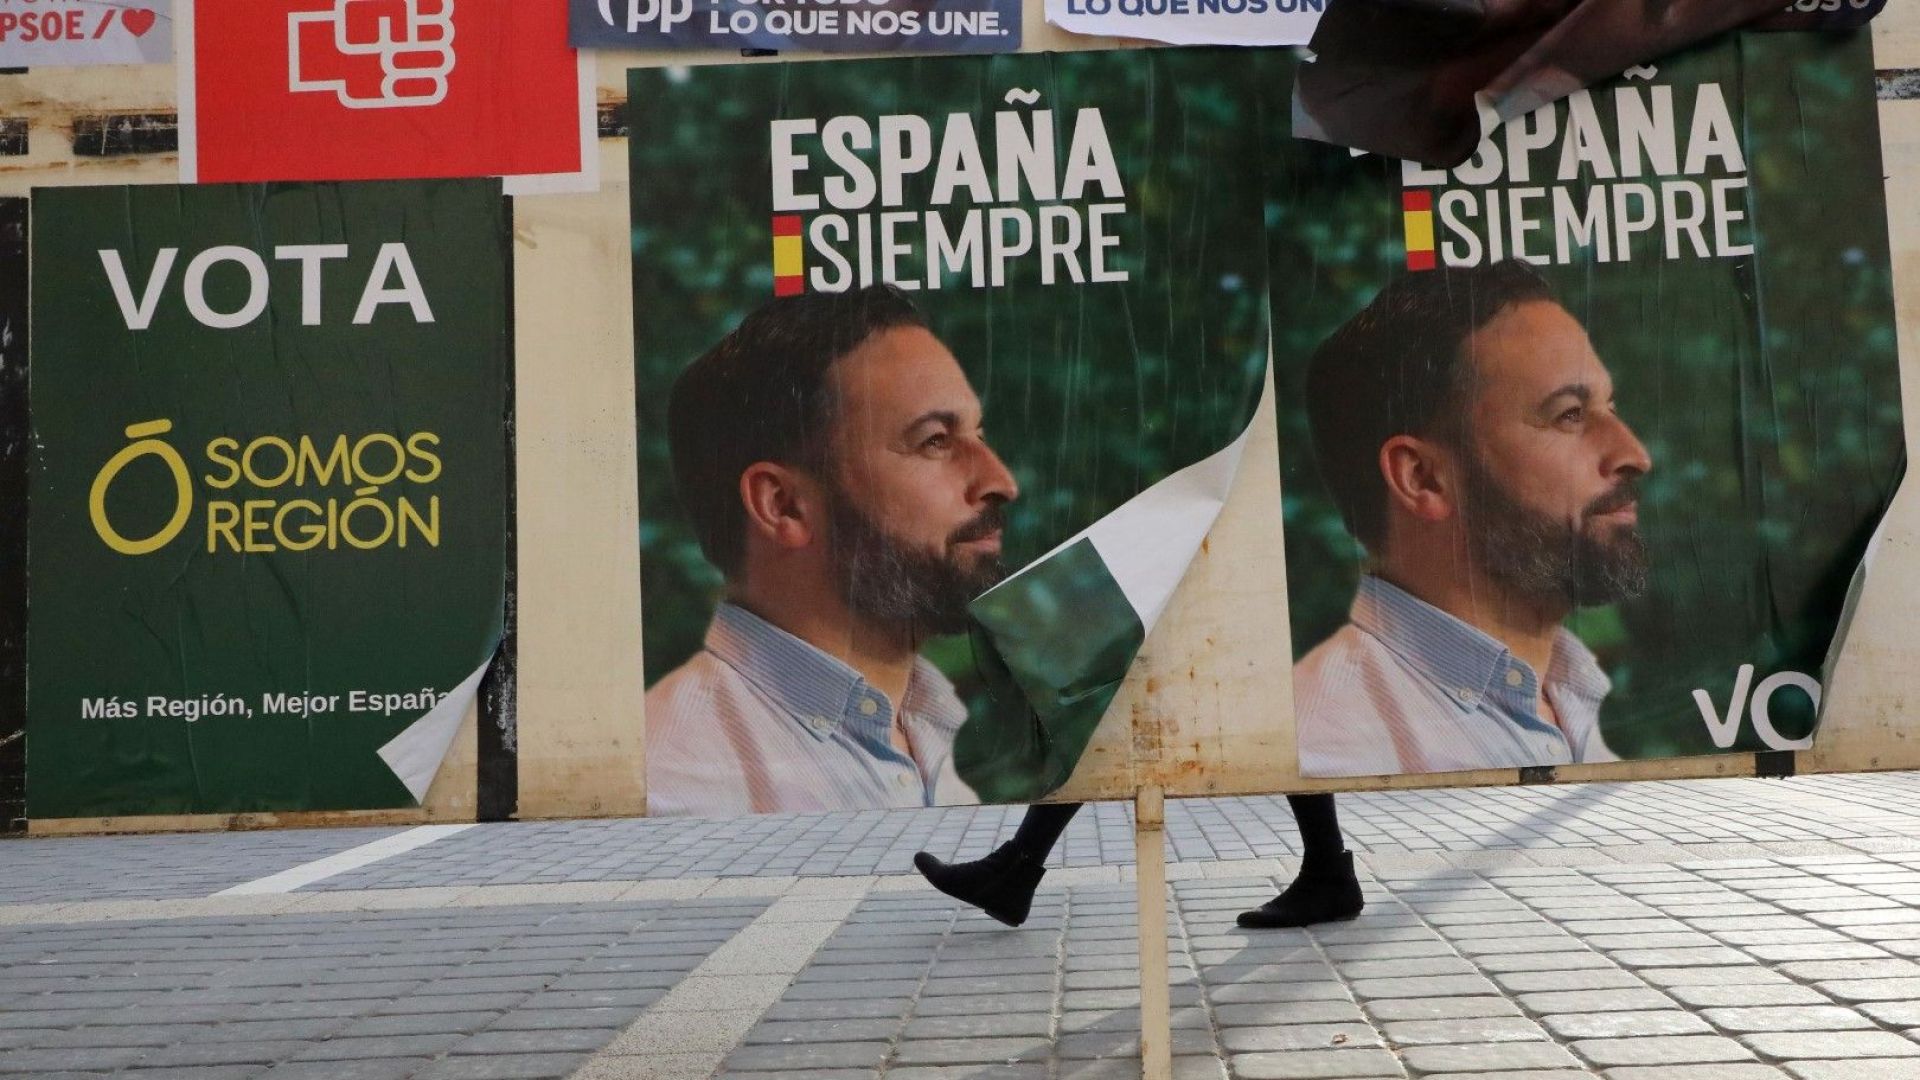 Пускането на радикалното дясно: уроци, научени от Испания